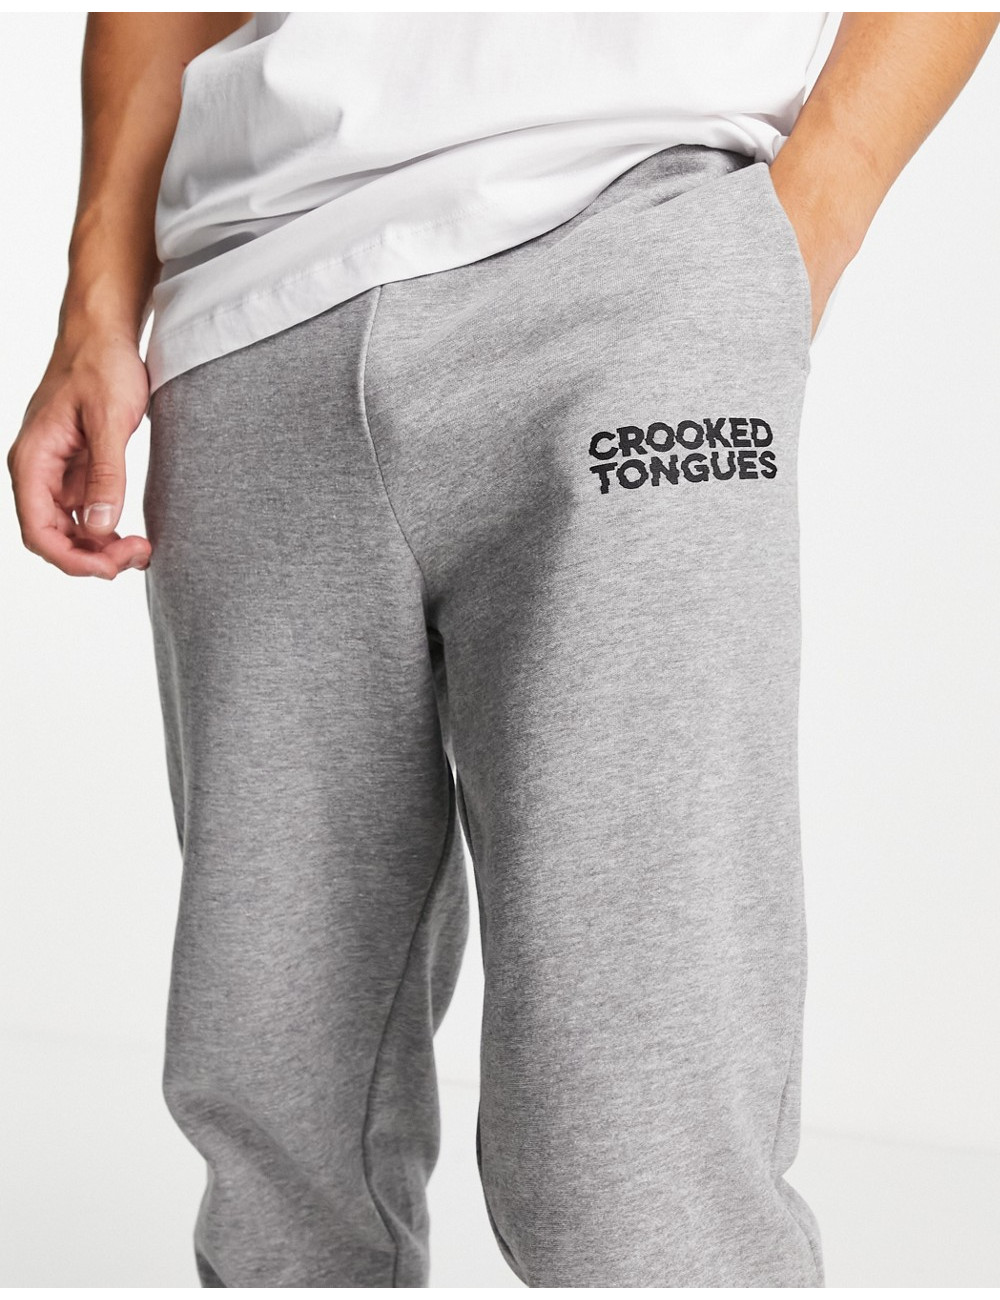 Crooked Tongues logo...